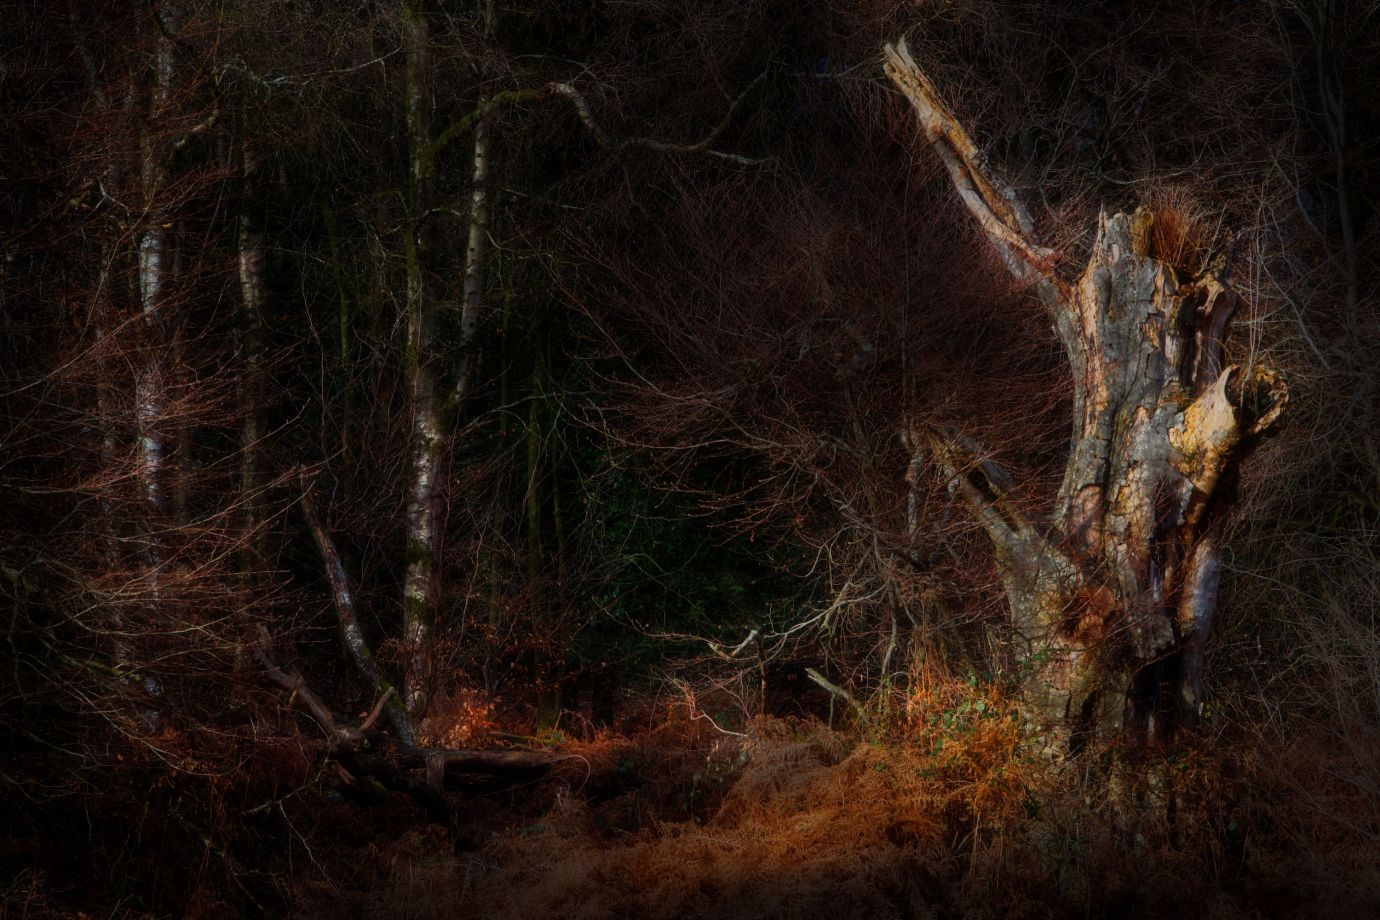 Oak-stump-silver-birch-atmospheric-winter-savernake-forest-wiltshire-6261-01022023